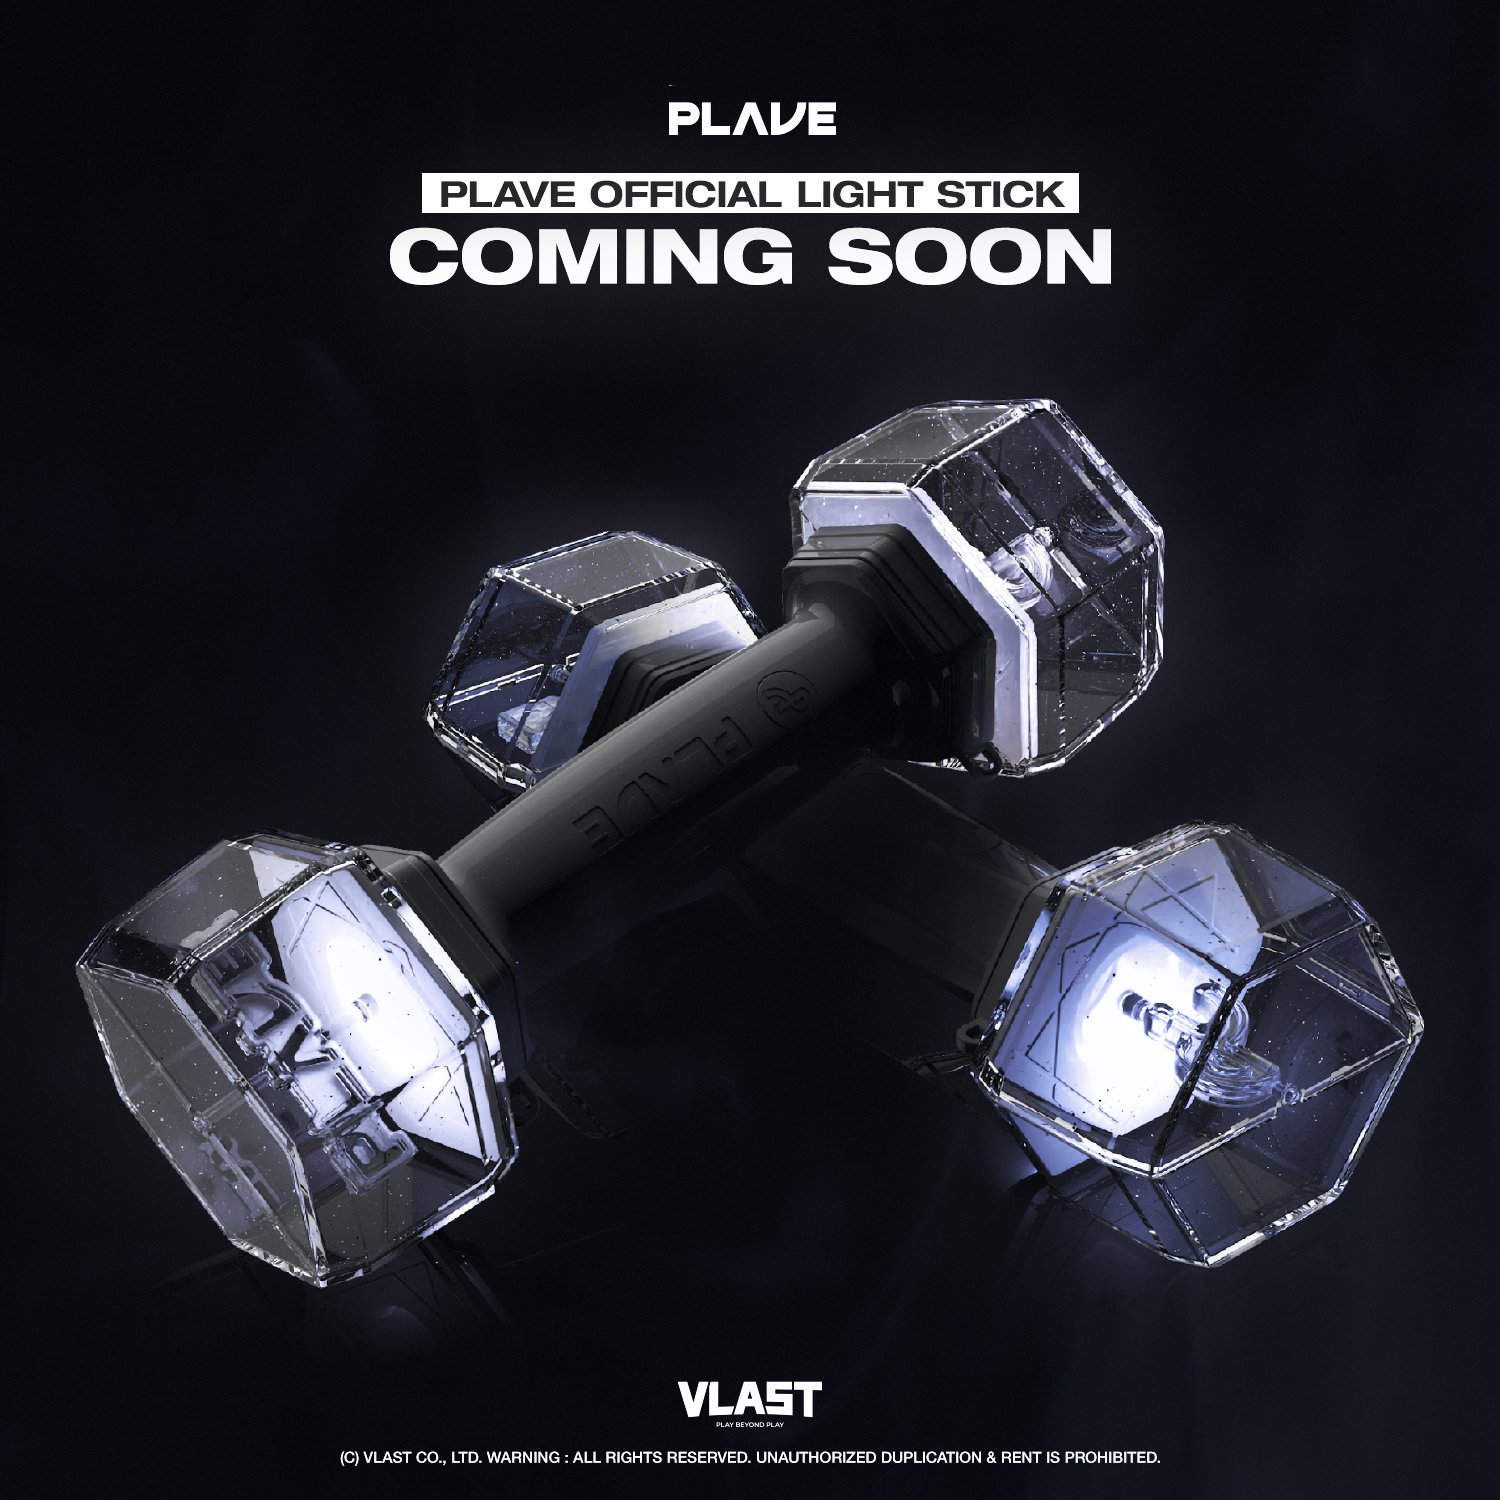 PLAVE Reveals Official Light Stick